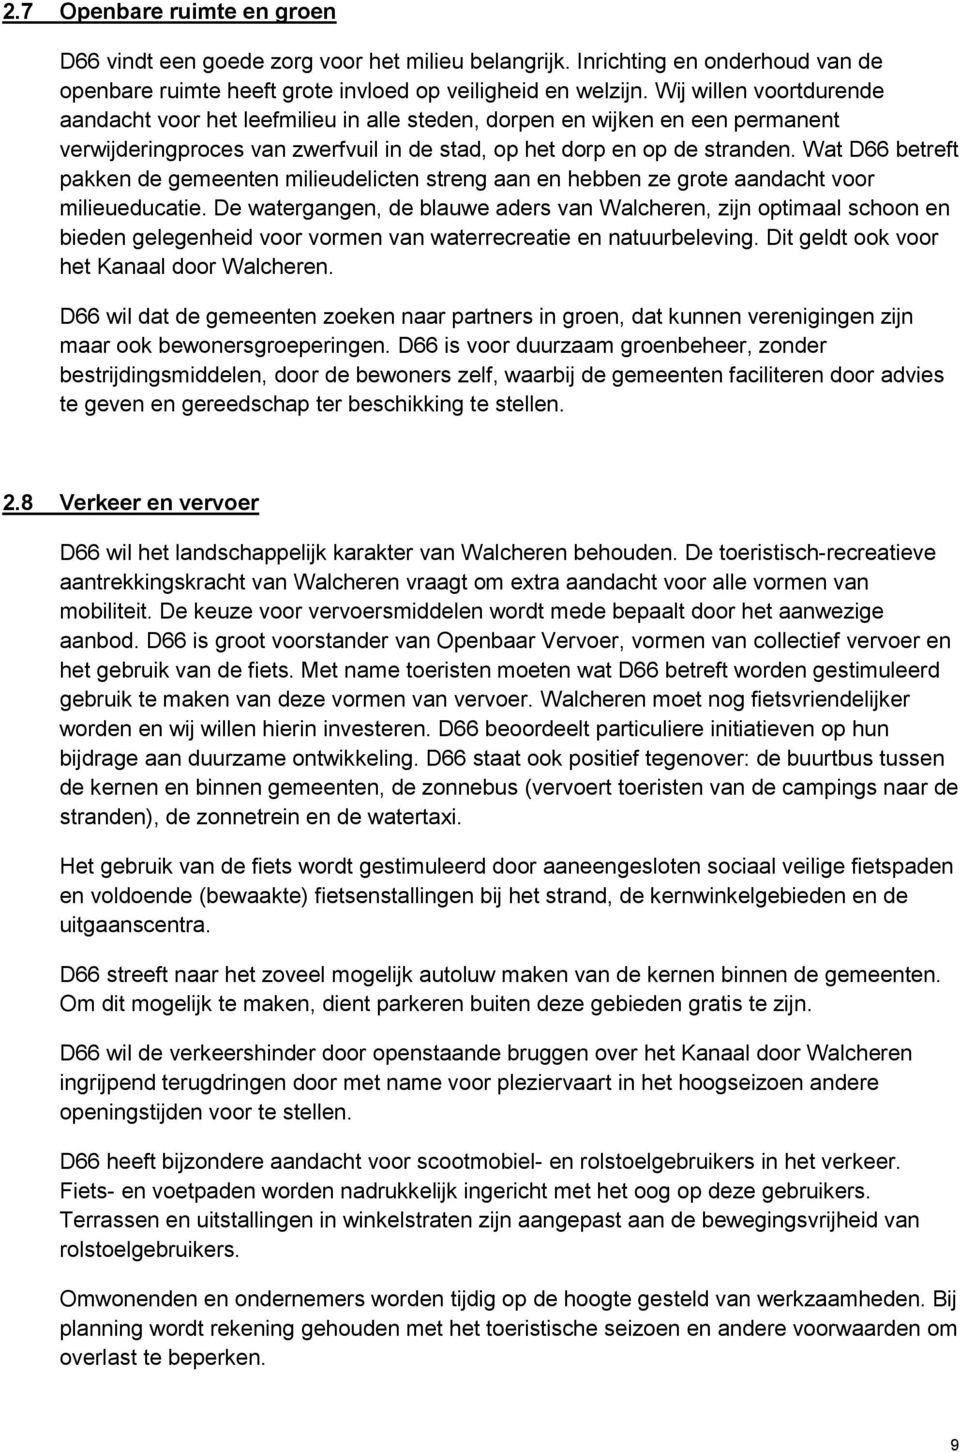 Wat D66 betreft pakken de gemeenten milieudelicten streng aan en hebben ze grote aandacht voor milieueducatie.